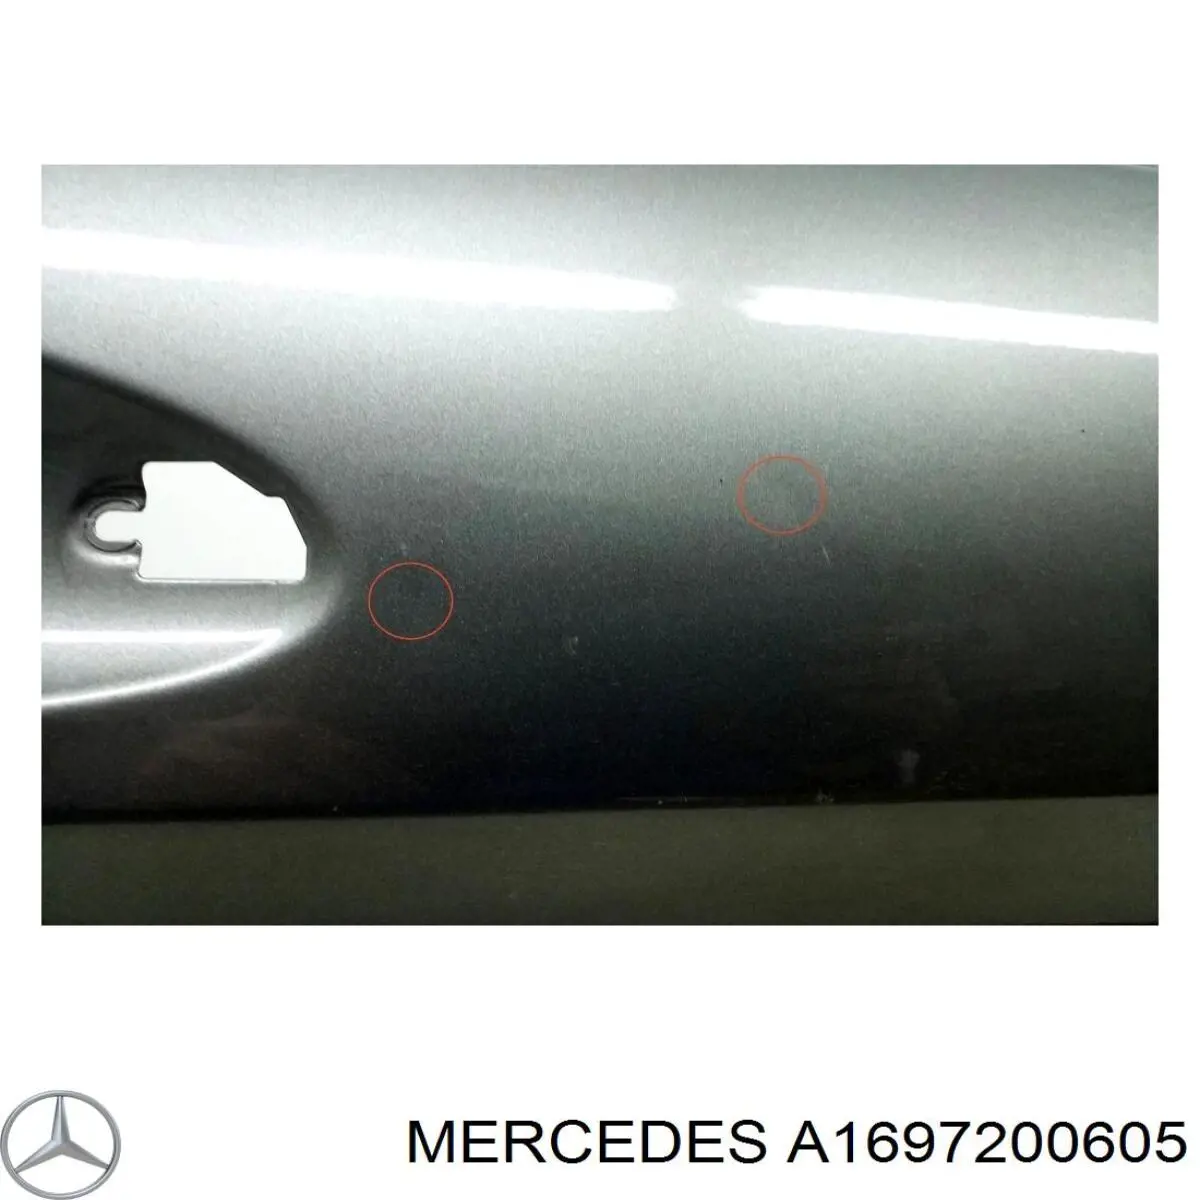 A1697200605 Mercedes puerta delantera derecha